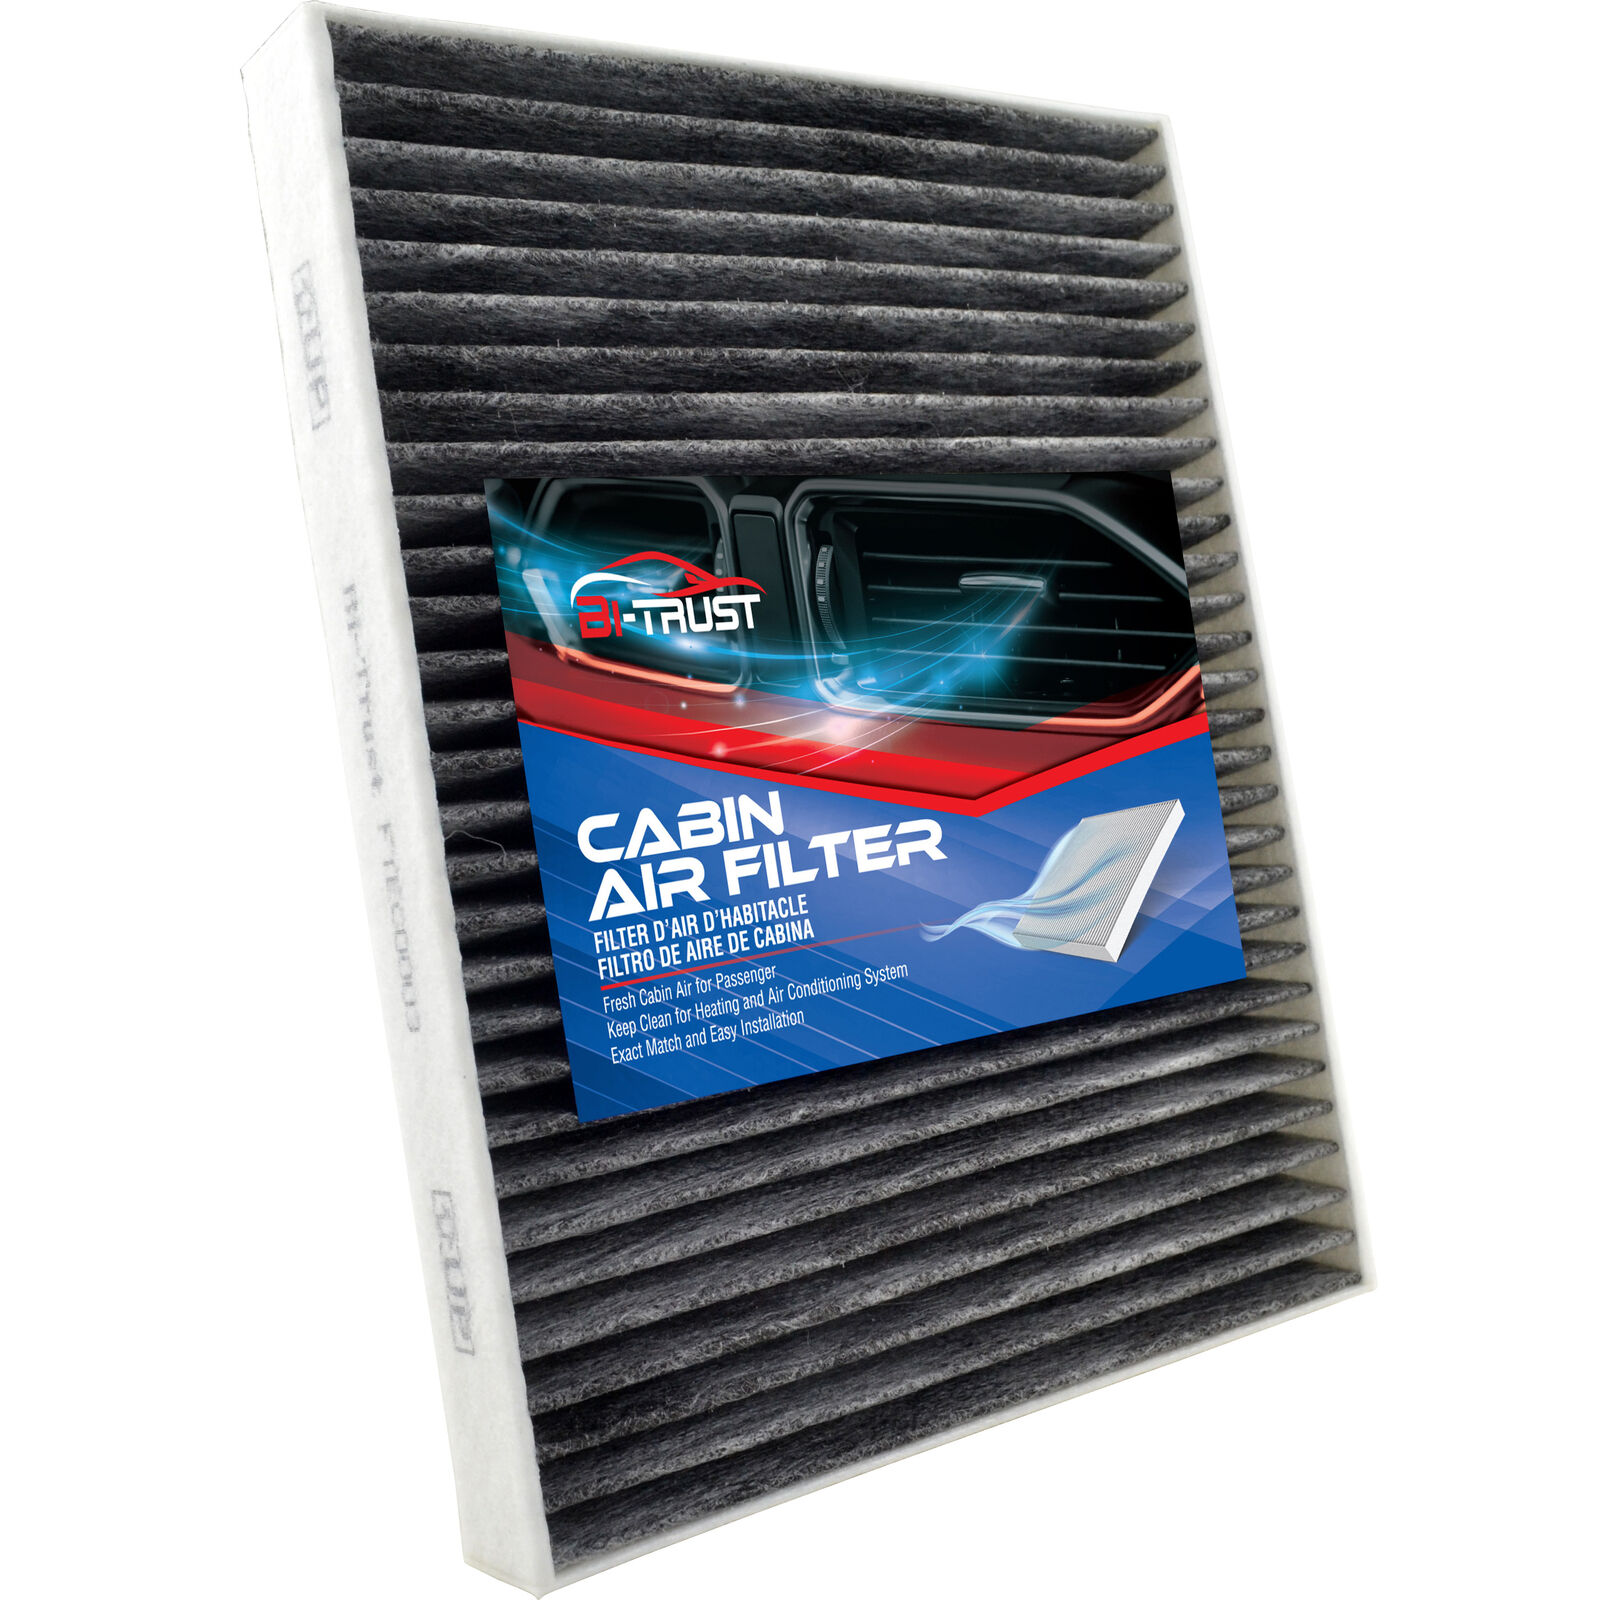 Cabin Air Filter for Ford Fiesta 2014-2017 L3 1.0L 2011-2019 L4 1.6L